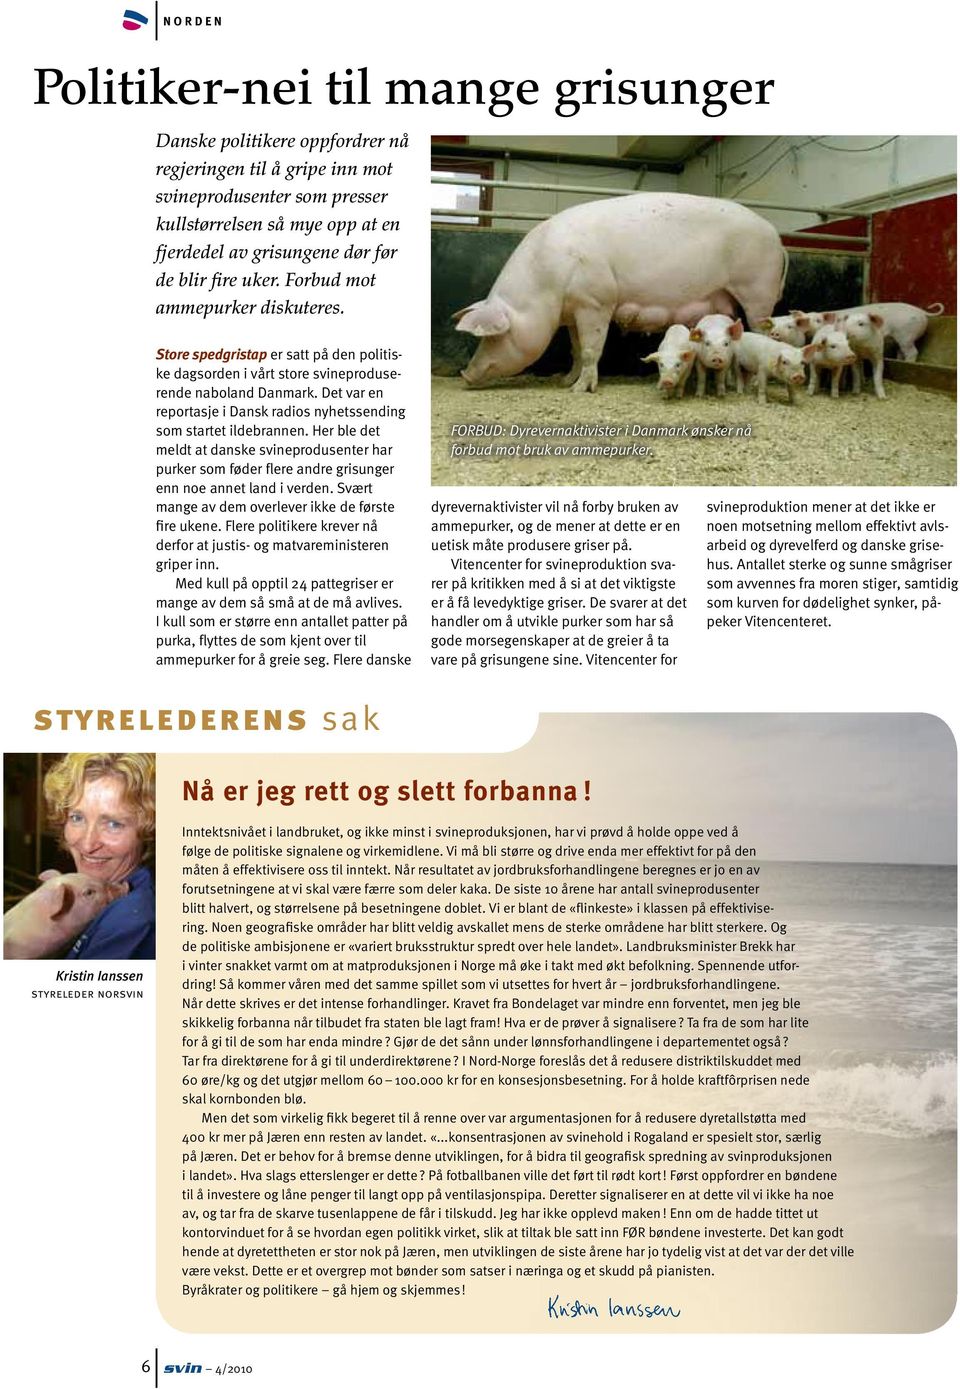 Det var en reportasje i Dansk radios nyhetssending som startet ildebrannen. Her ble det meldt at danske svineprodusenter har purker som føder flere andre grisunger enn noe annet land i verden.